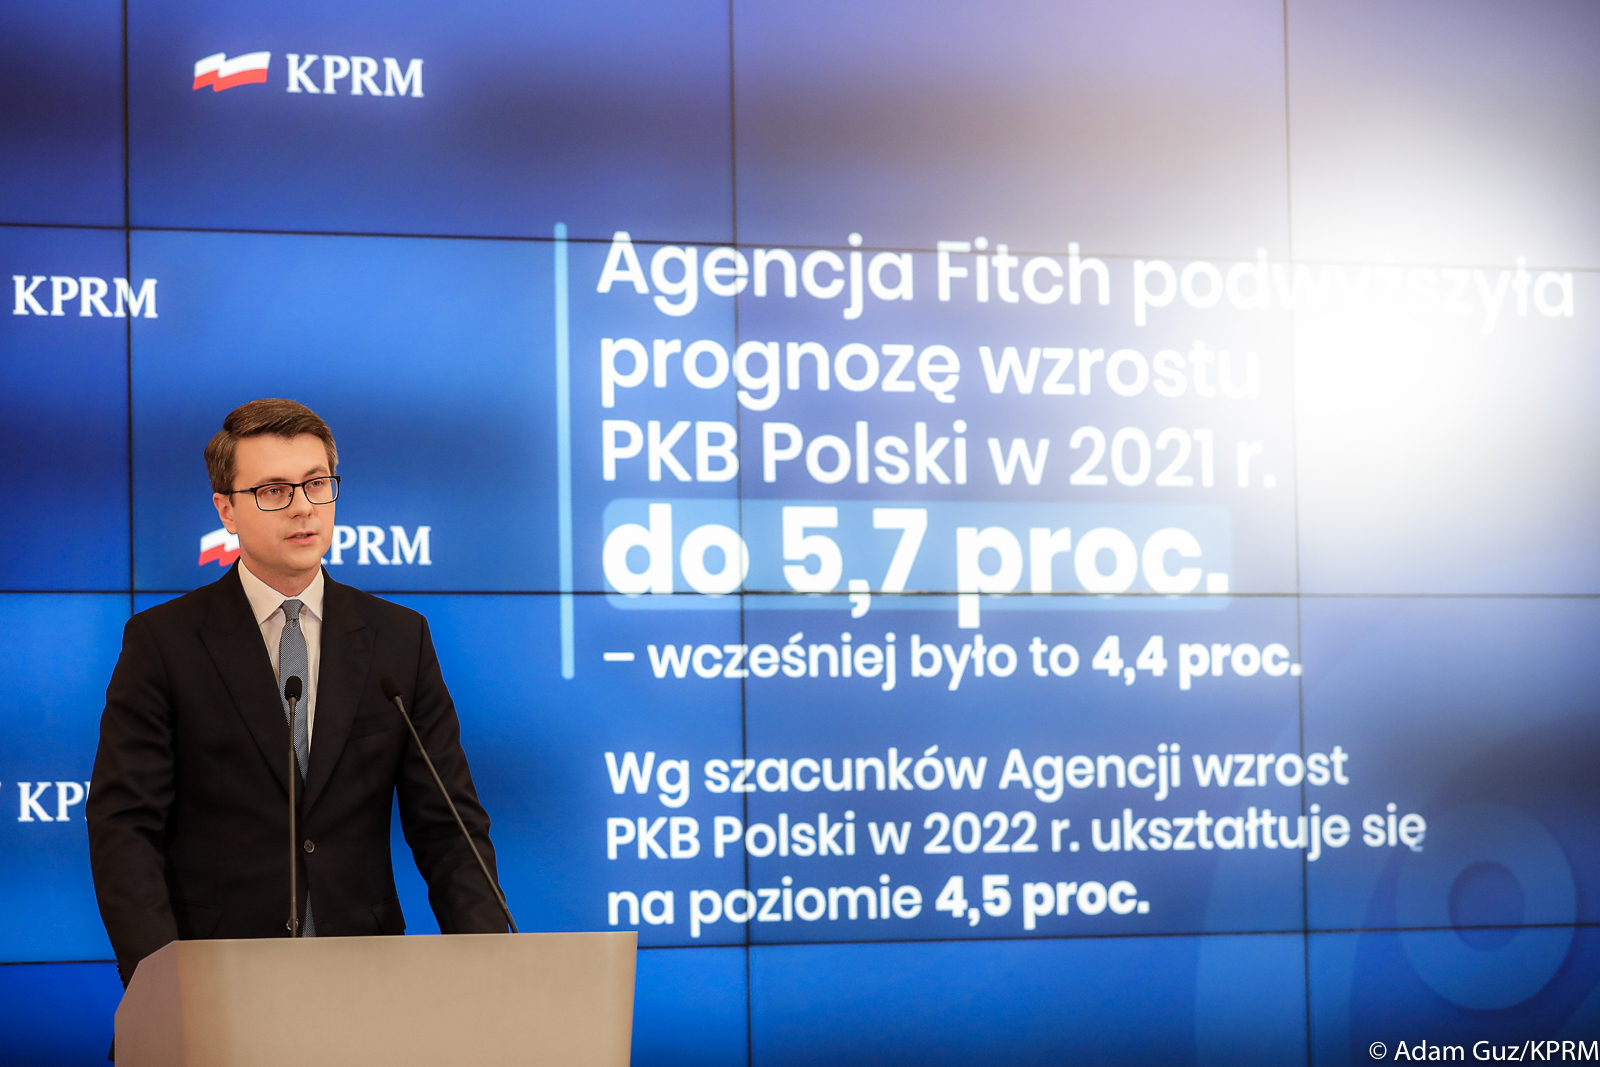 Dobra polityka gospodarcza rządu Prawa i Sprawiedliwości przekłada się na pozytywne prognozy dla polskiej gospodarki!